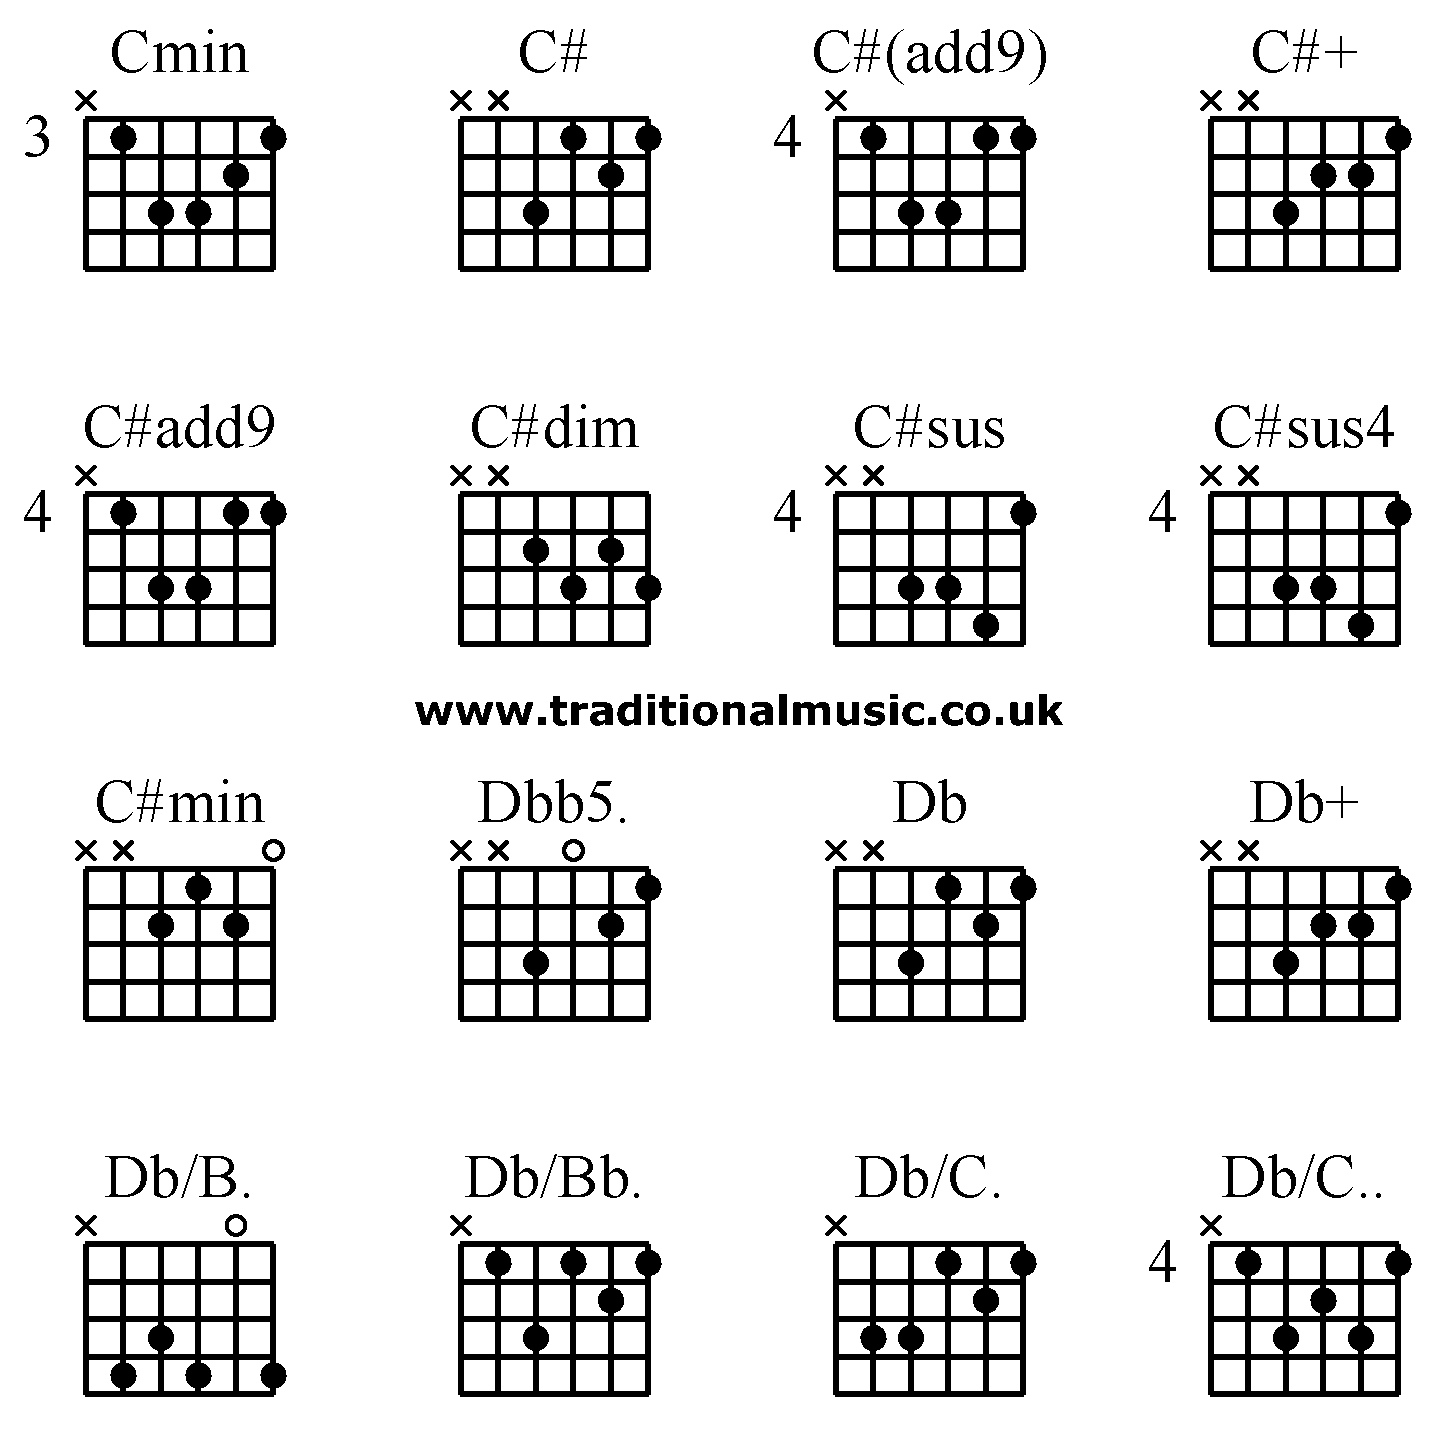 Advanced guitar chords:Cmin C# C#(add9) C#+, C#add9 C#dim C#sus C#sus4, C#min Dbb5. Db Db+, Db/B. Db/Bb. Db/C. Db/C..